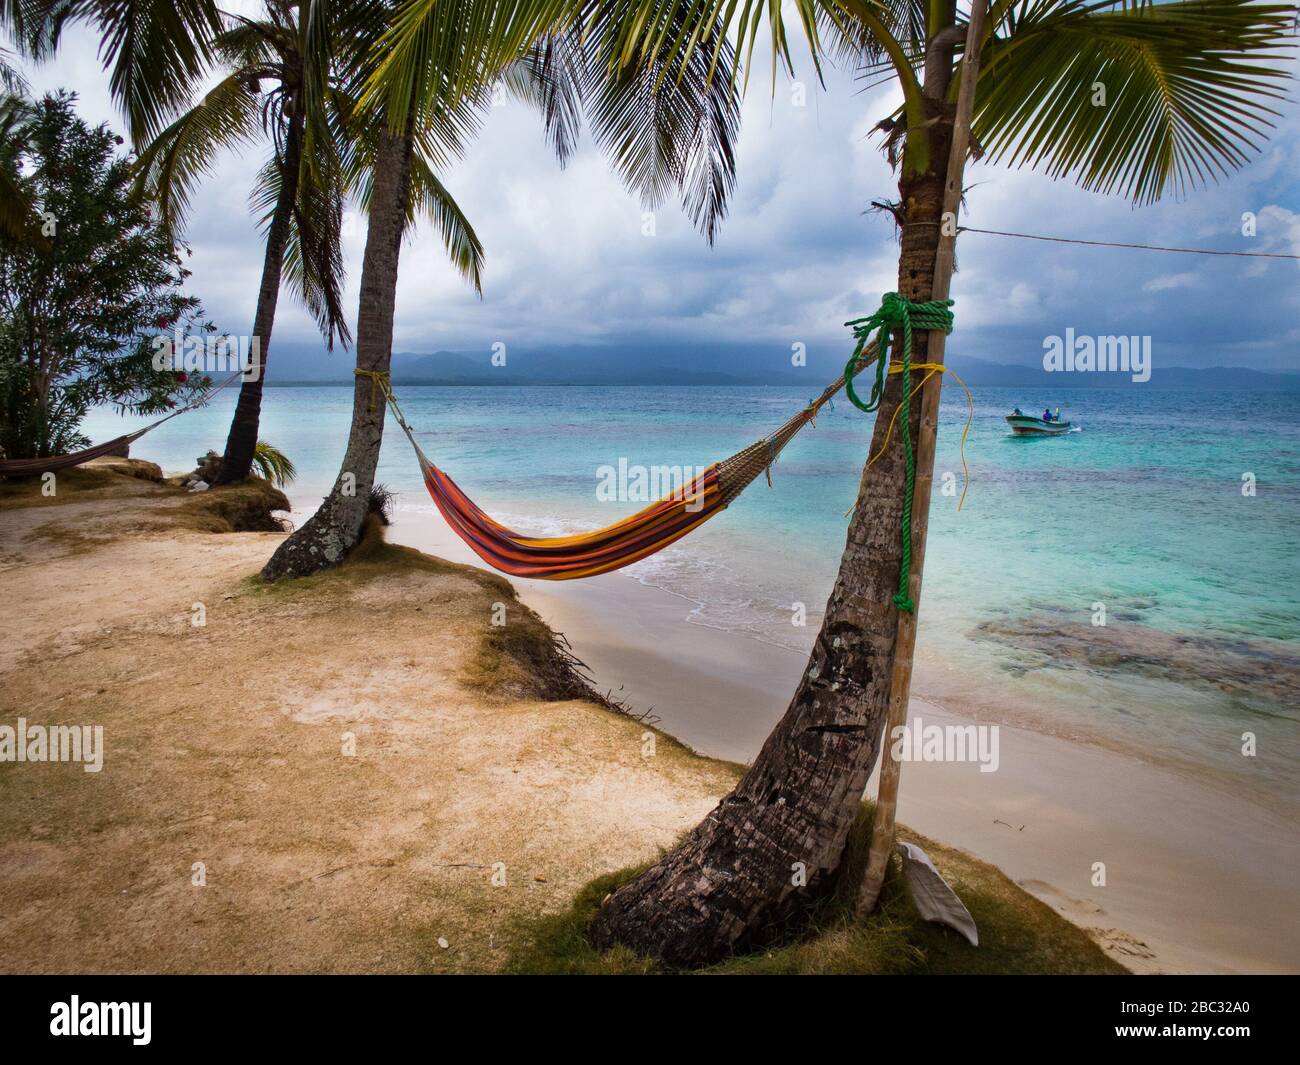 Un hamac se trouve entre deux palmiers à noix de coco au bord de l'eau sur  une île de l'océan des Caraïbes. Un bateau de pêche approche à la distance  Photo Stock -